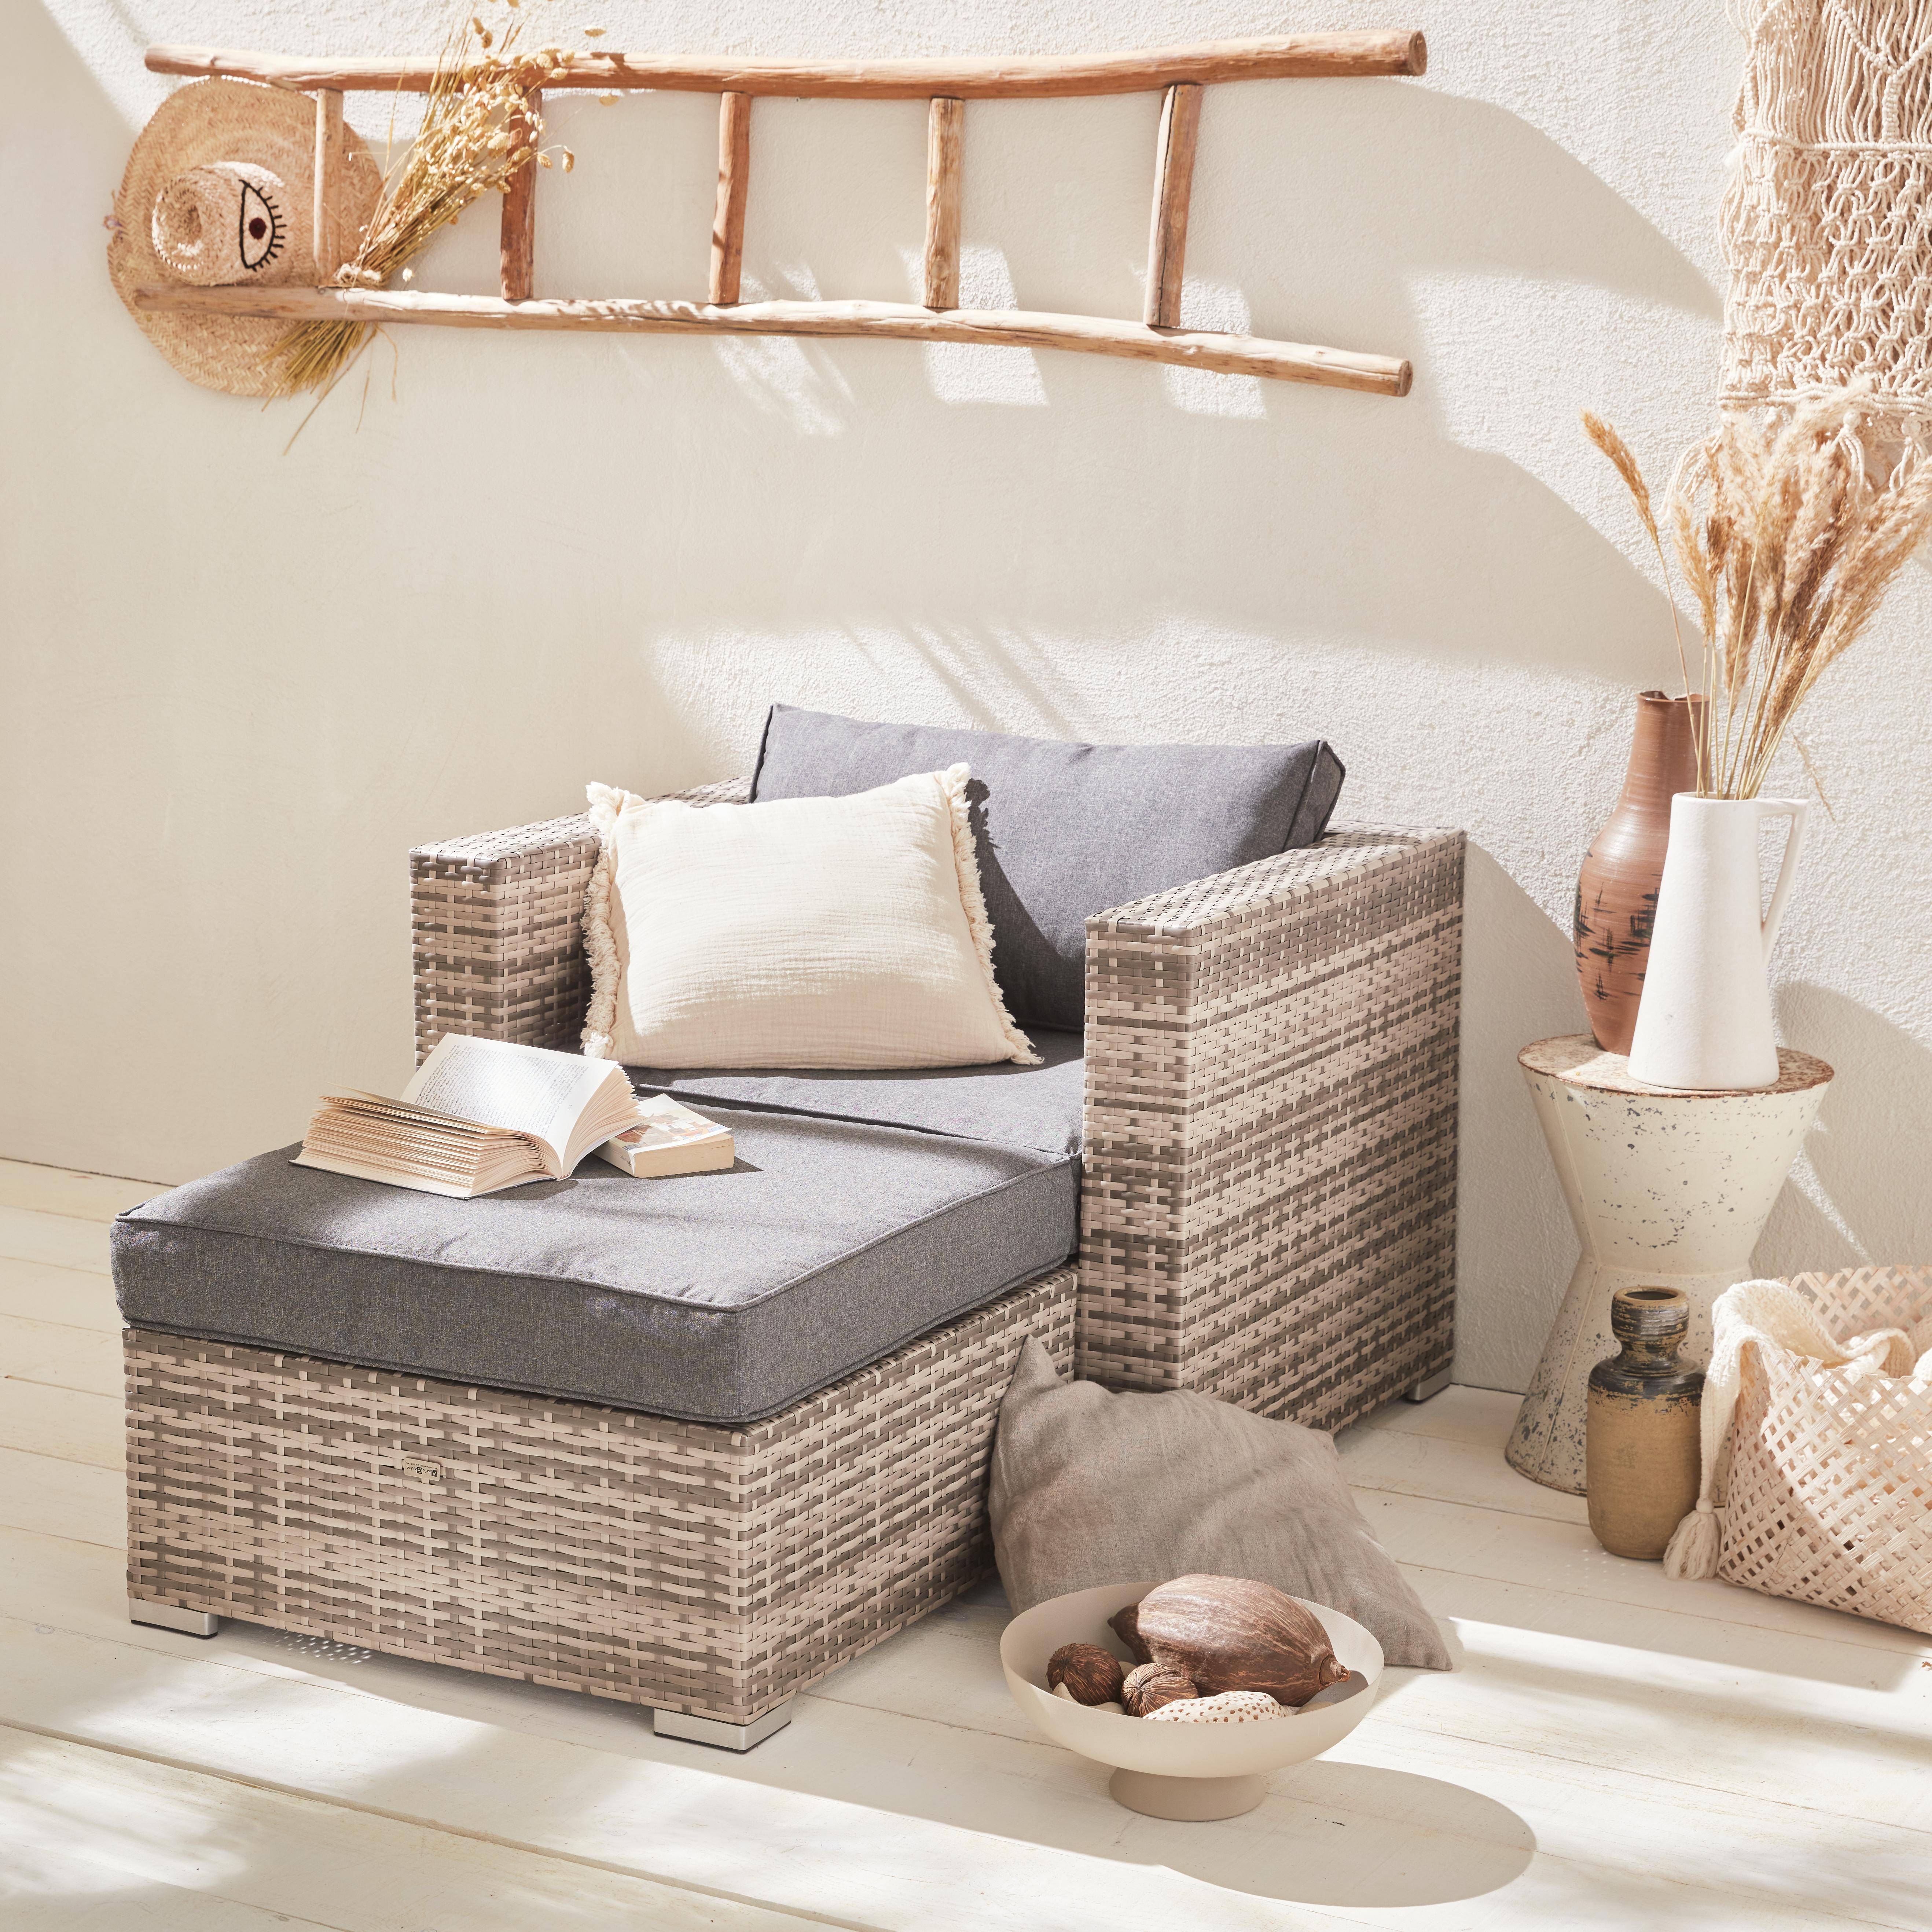 Garden sofa sets - armchair and footstool in rattan - Genova -  Mixed Grey rattan, Grey cushions,sweeek,Photo1